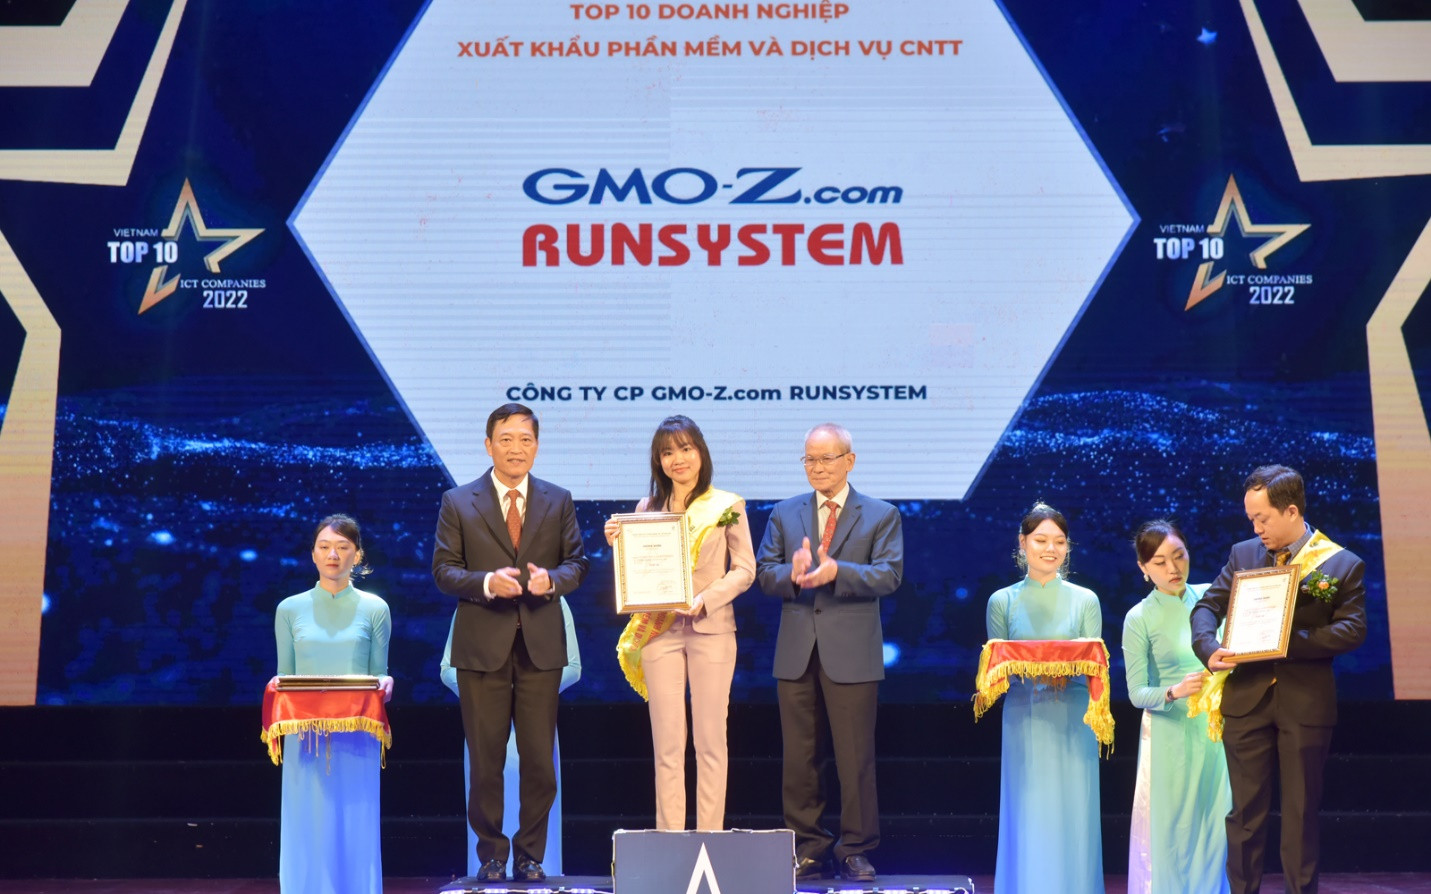 GMO-Z.com RUNSYSTEM tiếp tục khẳng định vị trí vững chắc trên thị trường CNTT Việt Nam - Ảnh 1.